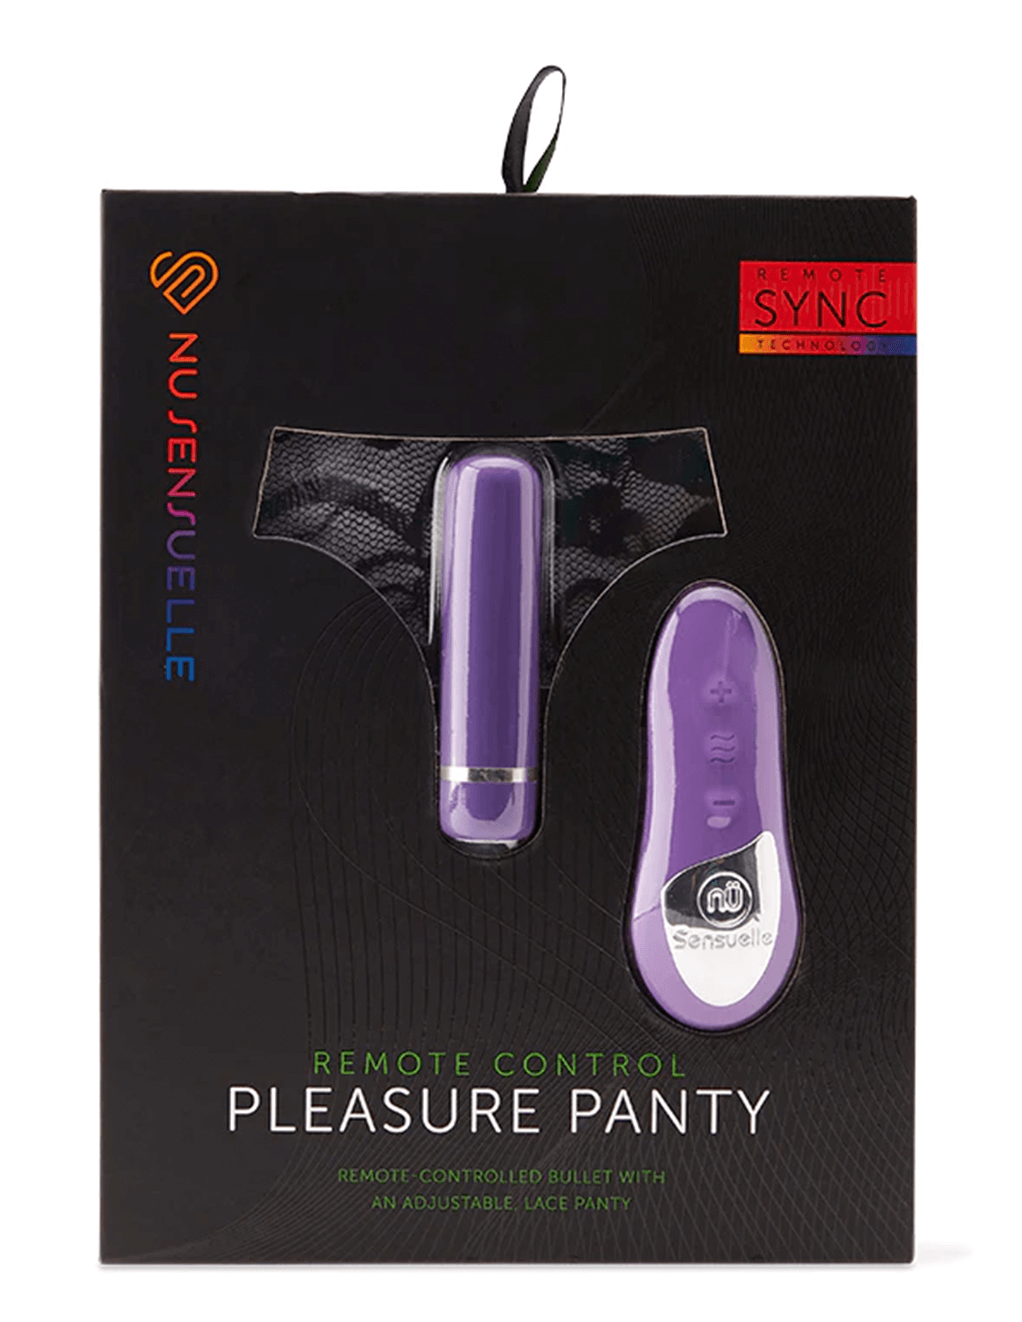 Nu Sensuelle 15 Function Pleasure Panty - Purple - Box Front